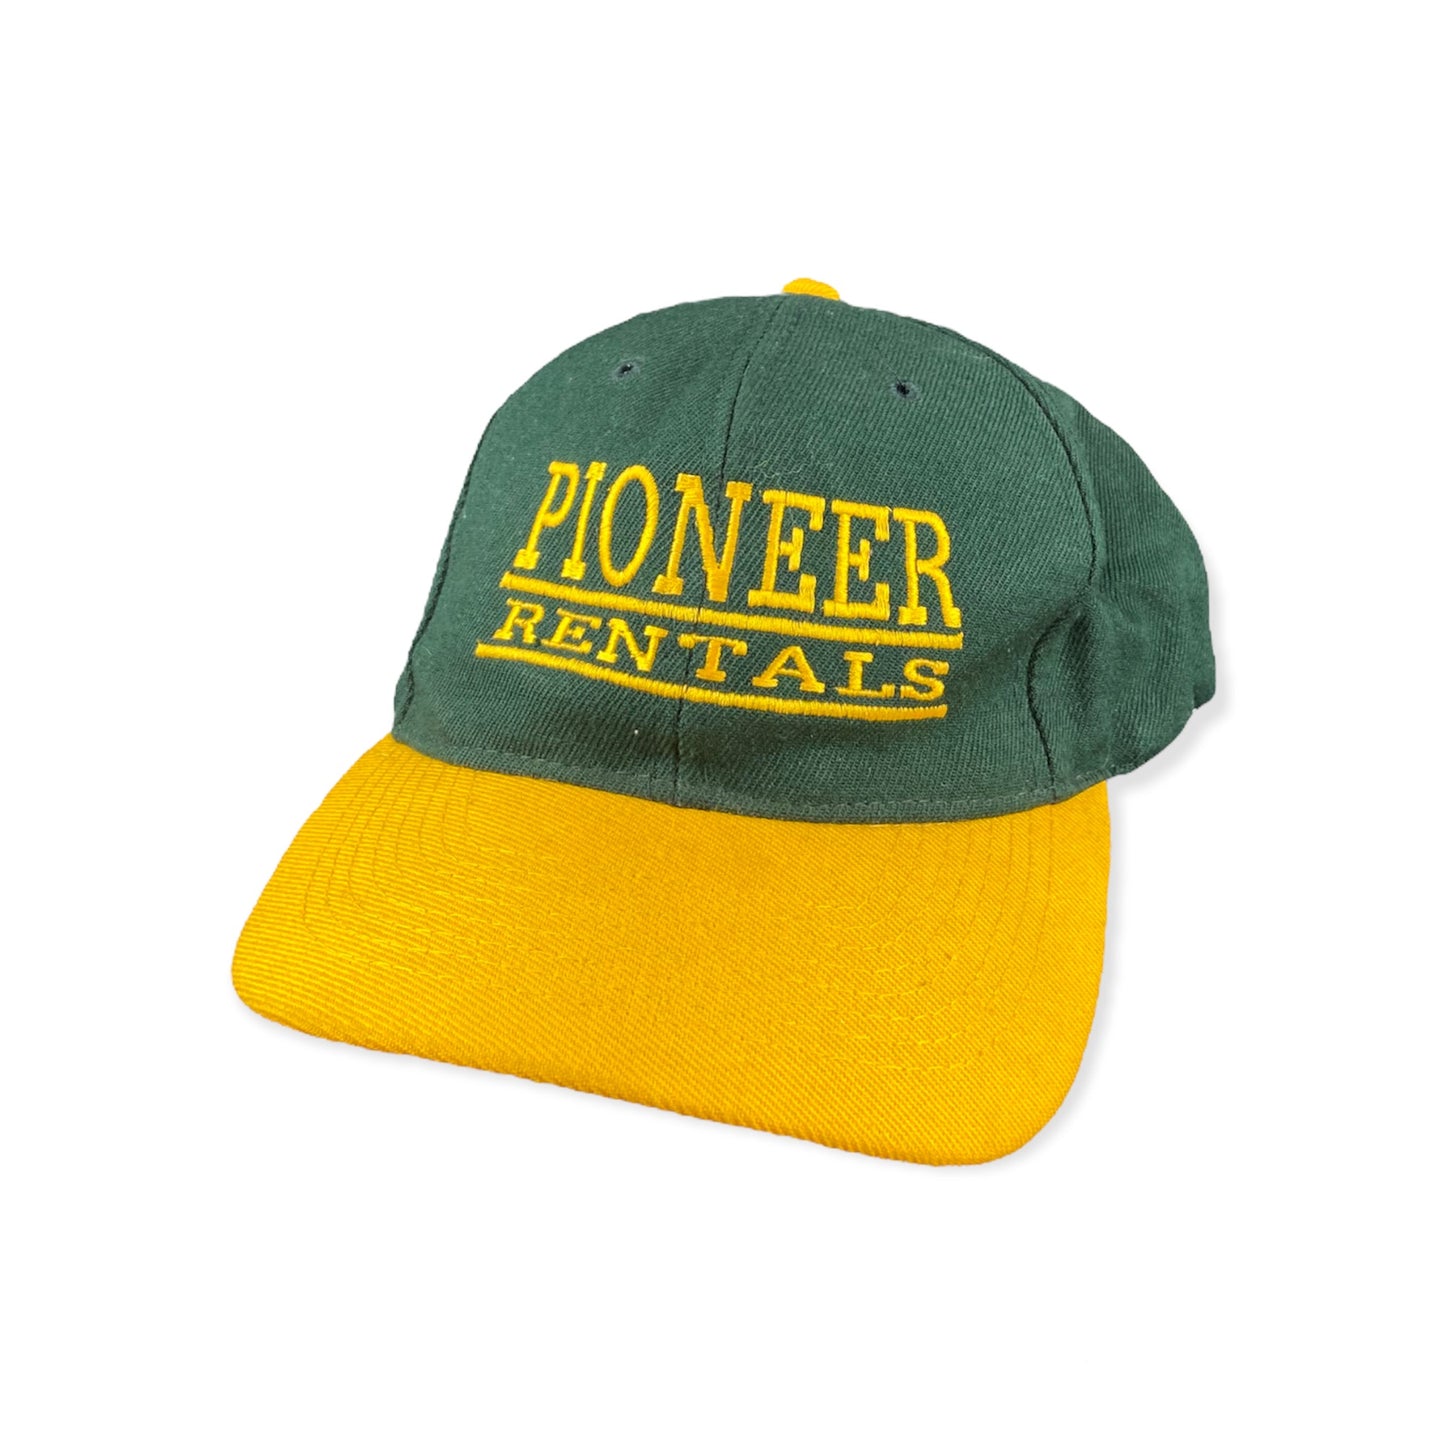 Pioneer Rentals Cap